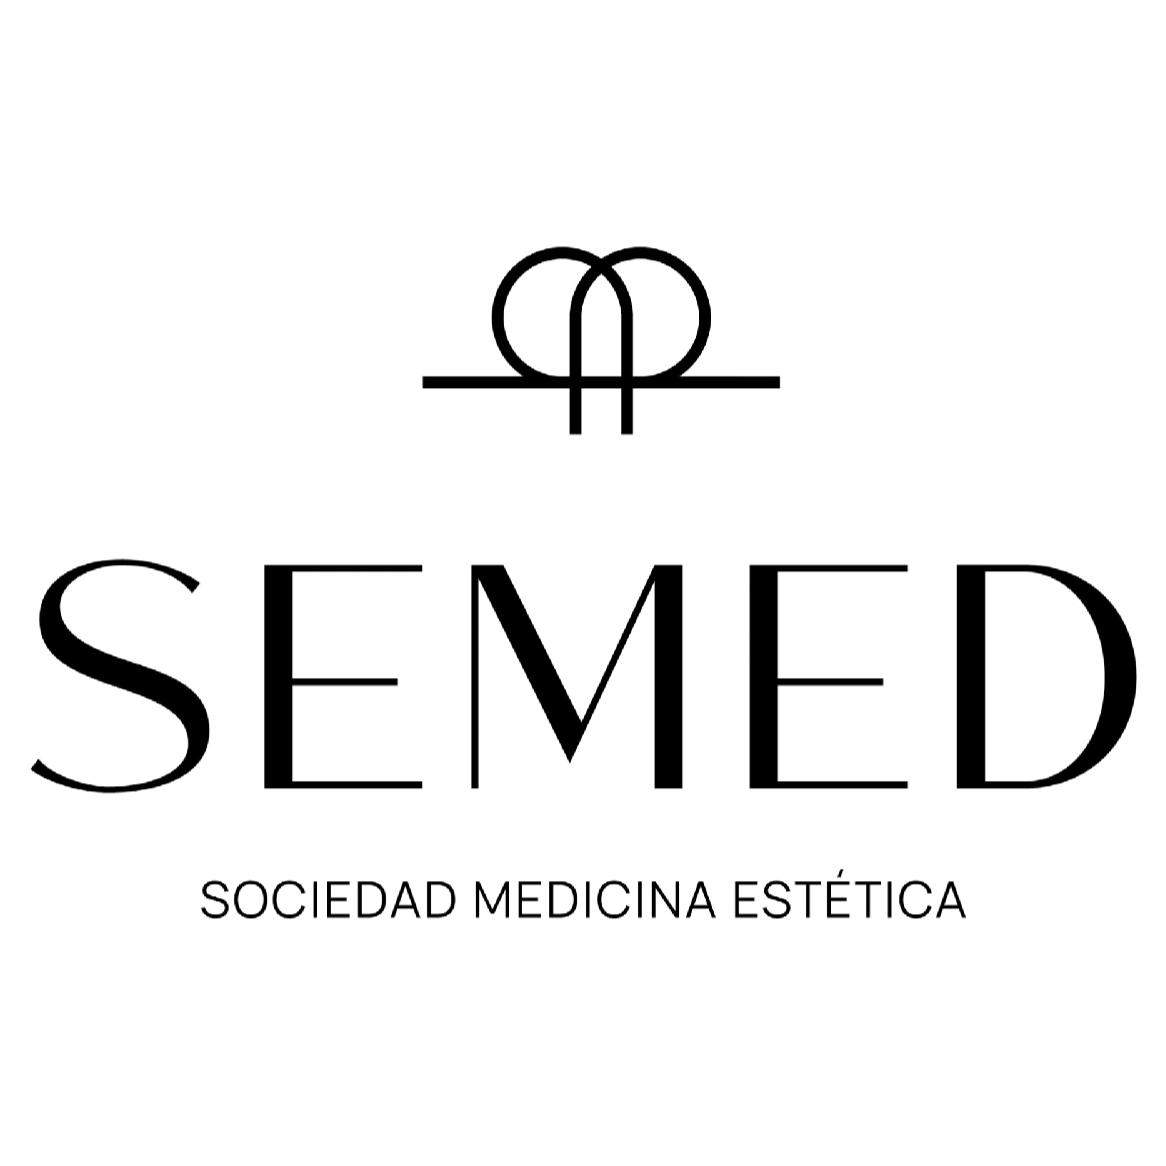 Semed Estética's images